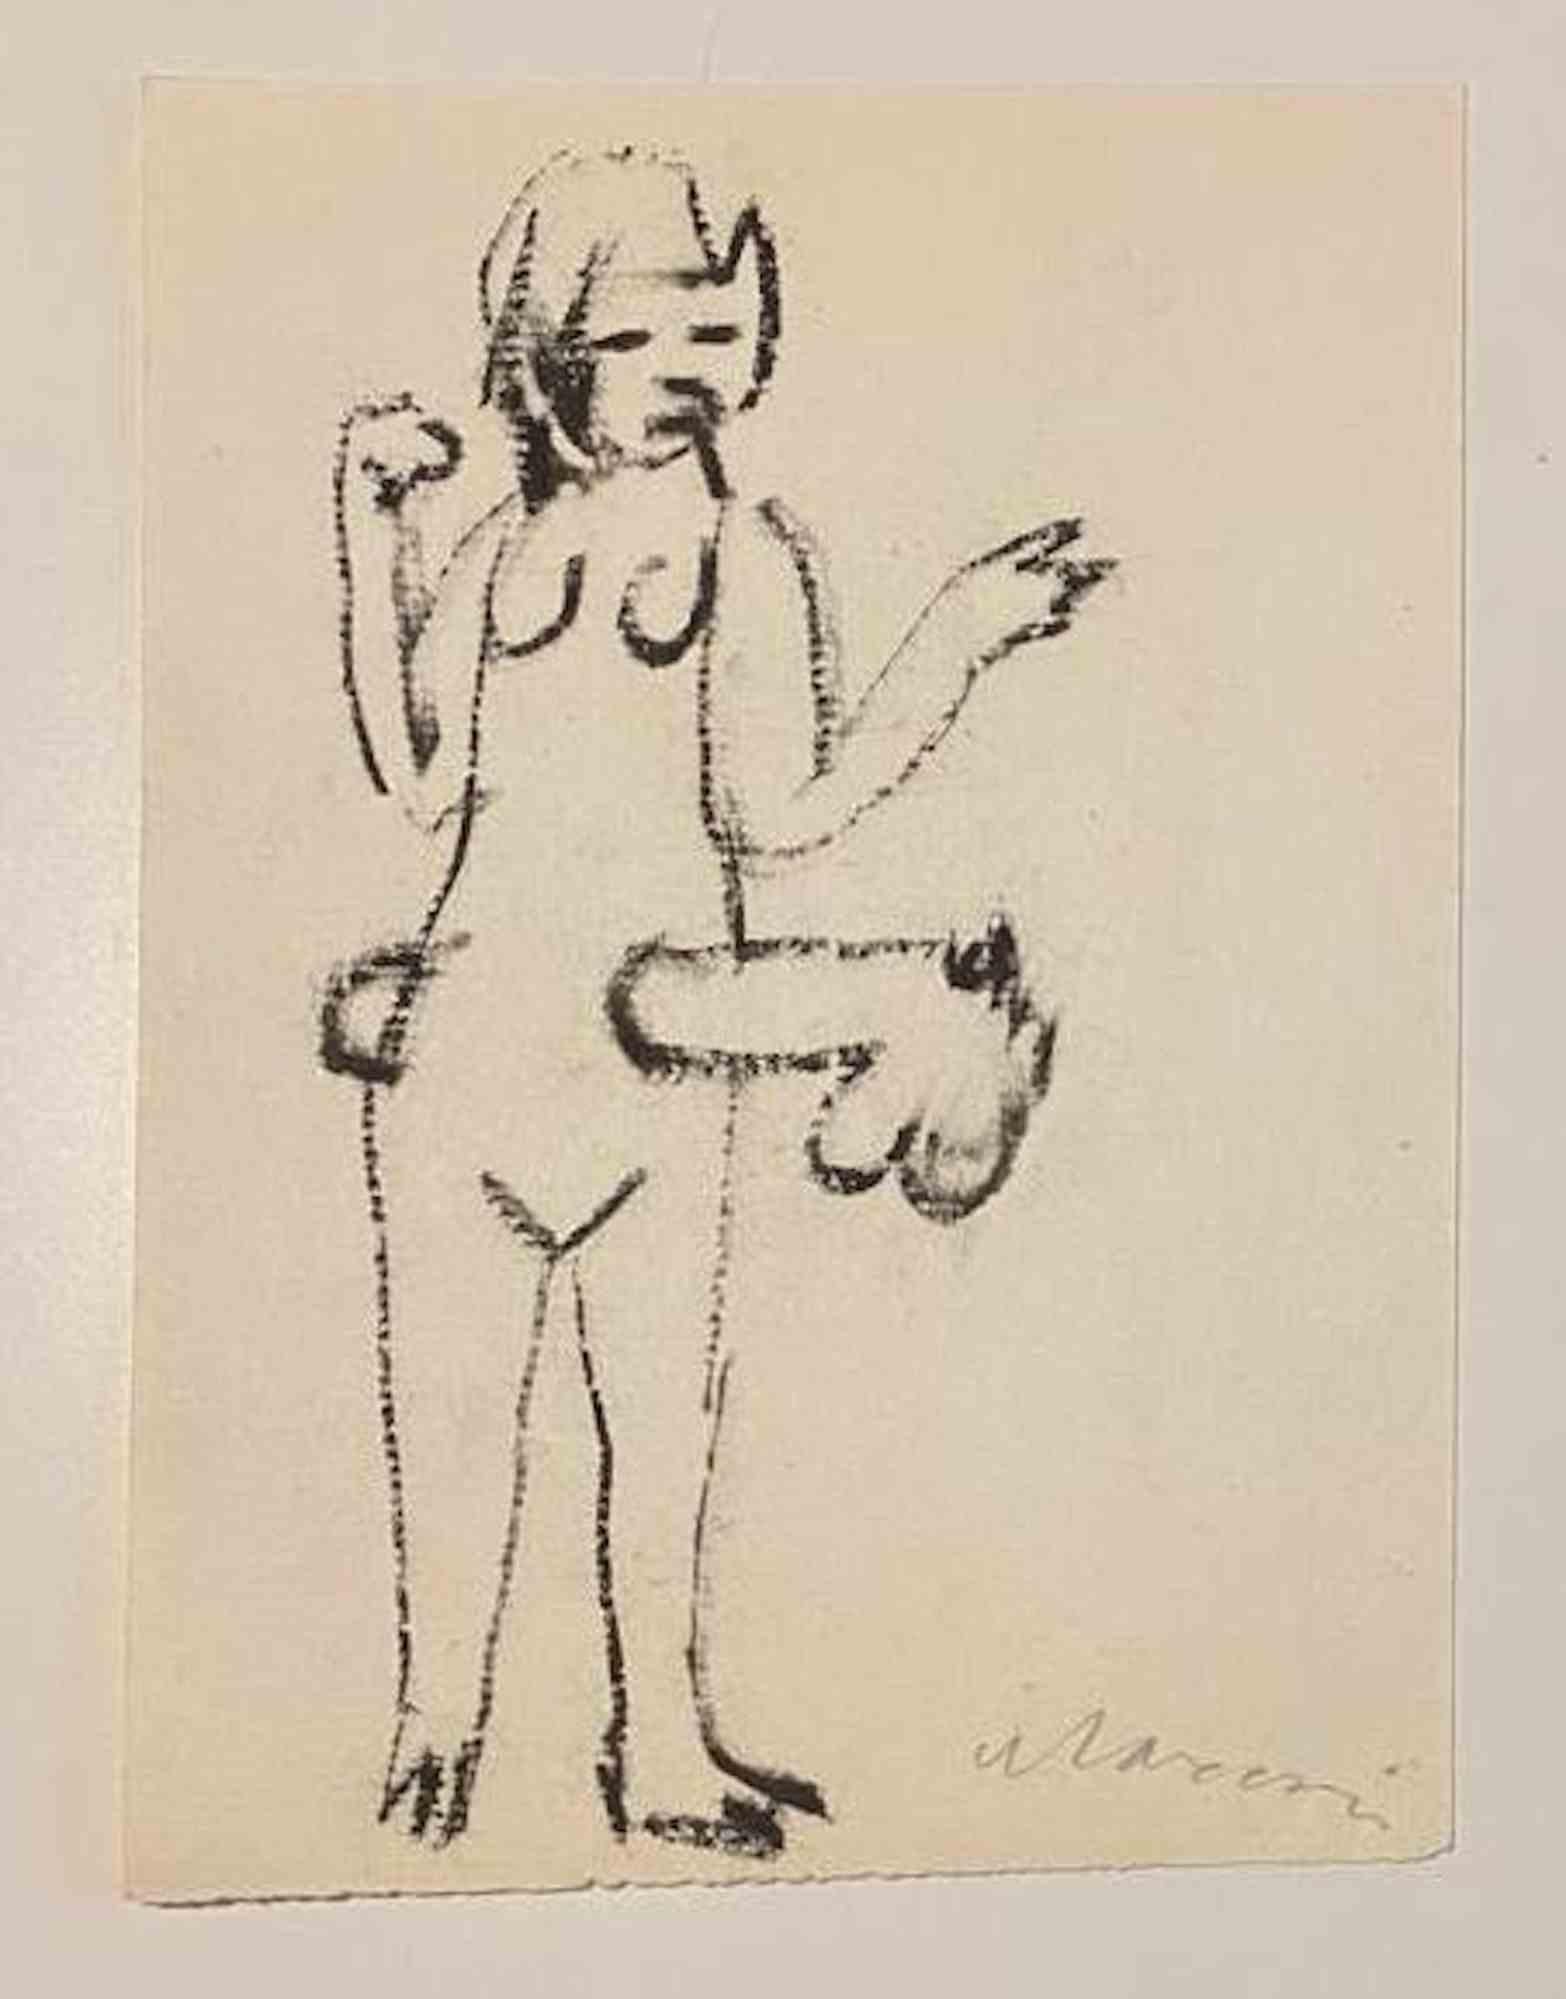 Le Jab est un dessin au marqueur noir réalisé par Mino Maccari  (1924-1989) au milieu du XXe siècle.

Signé à la main en bas.

Bonnes conditions.

Mino Maccari (Sienne, 1924-Rome, 16 juin 1989) est un écrivain, peintre, graveur et journaliste